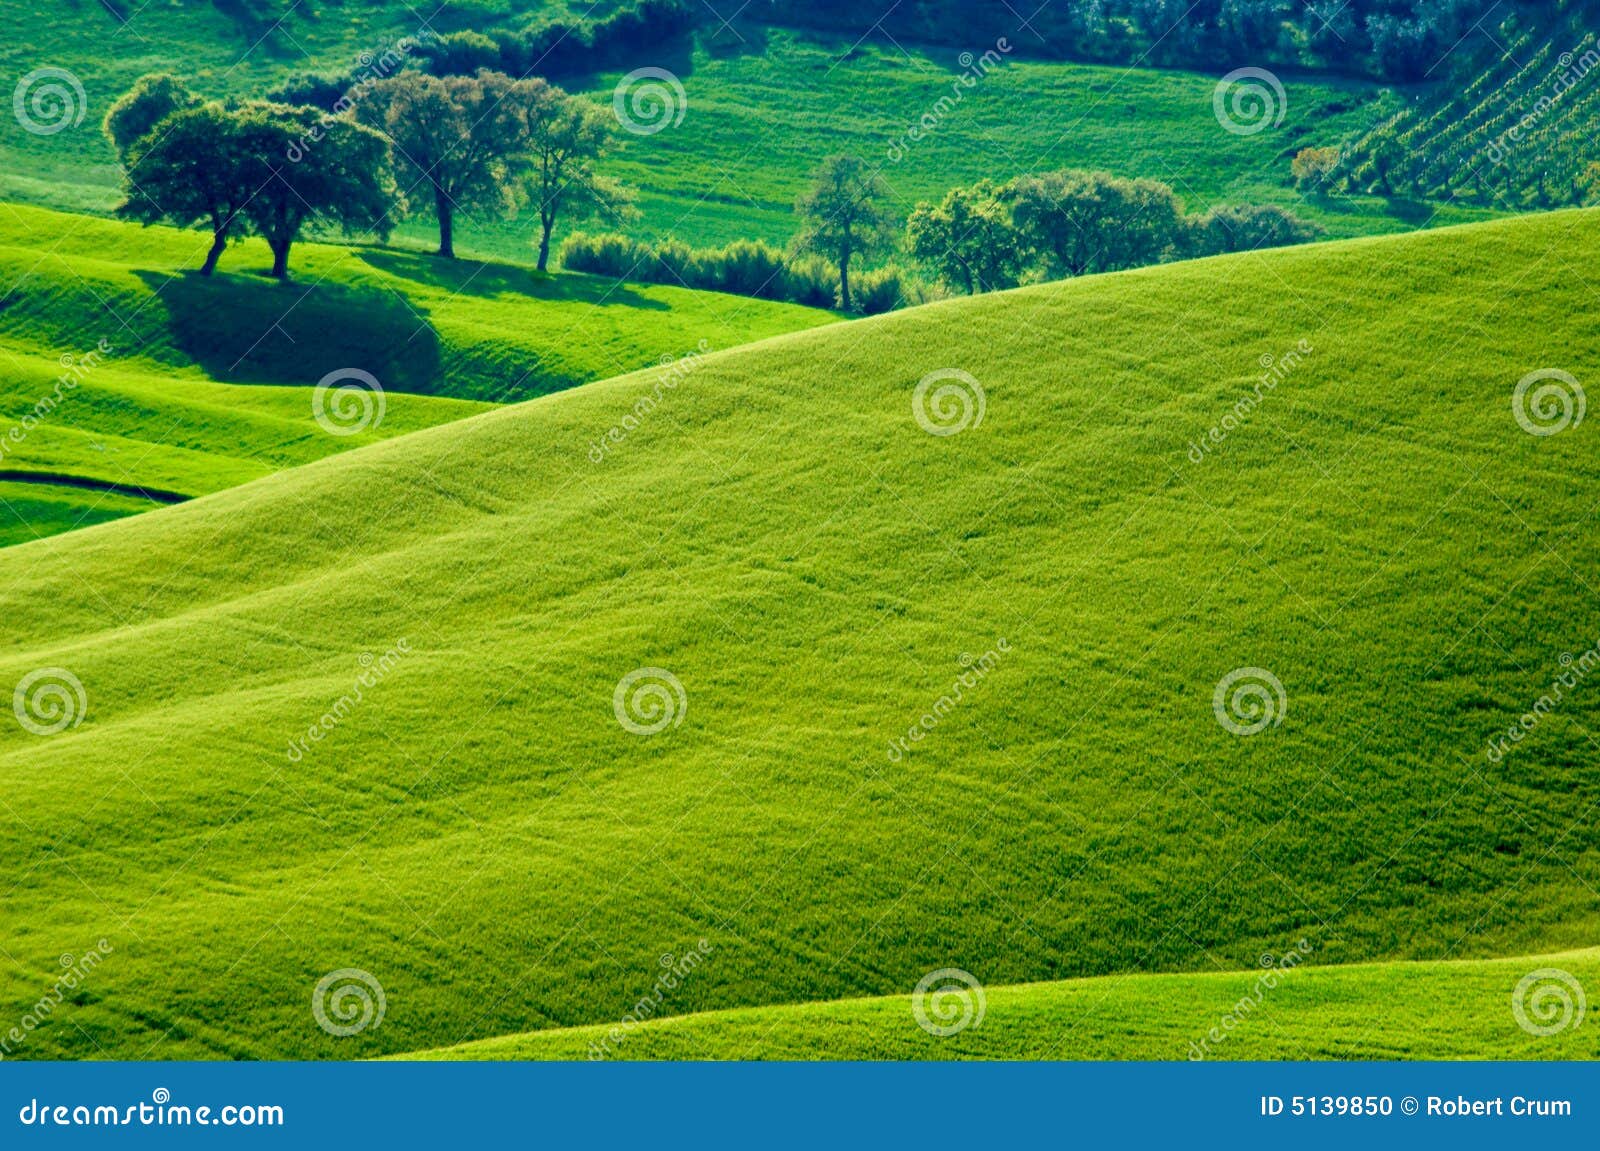 Italiaanse gebieden. Landelijk plattelandslandschap in het gebied van Toscanië van luxuriant hellende gebieden Italy.Green van tarwe in het gebied van Toscanië van Italië. Dit is in Val d'Orcia, een vallei in het hart van Toscanië dat een Plaats van de Erfenis van de Wereld van de V.N. is.